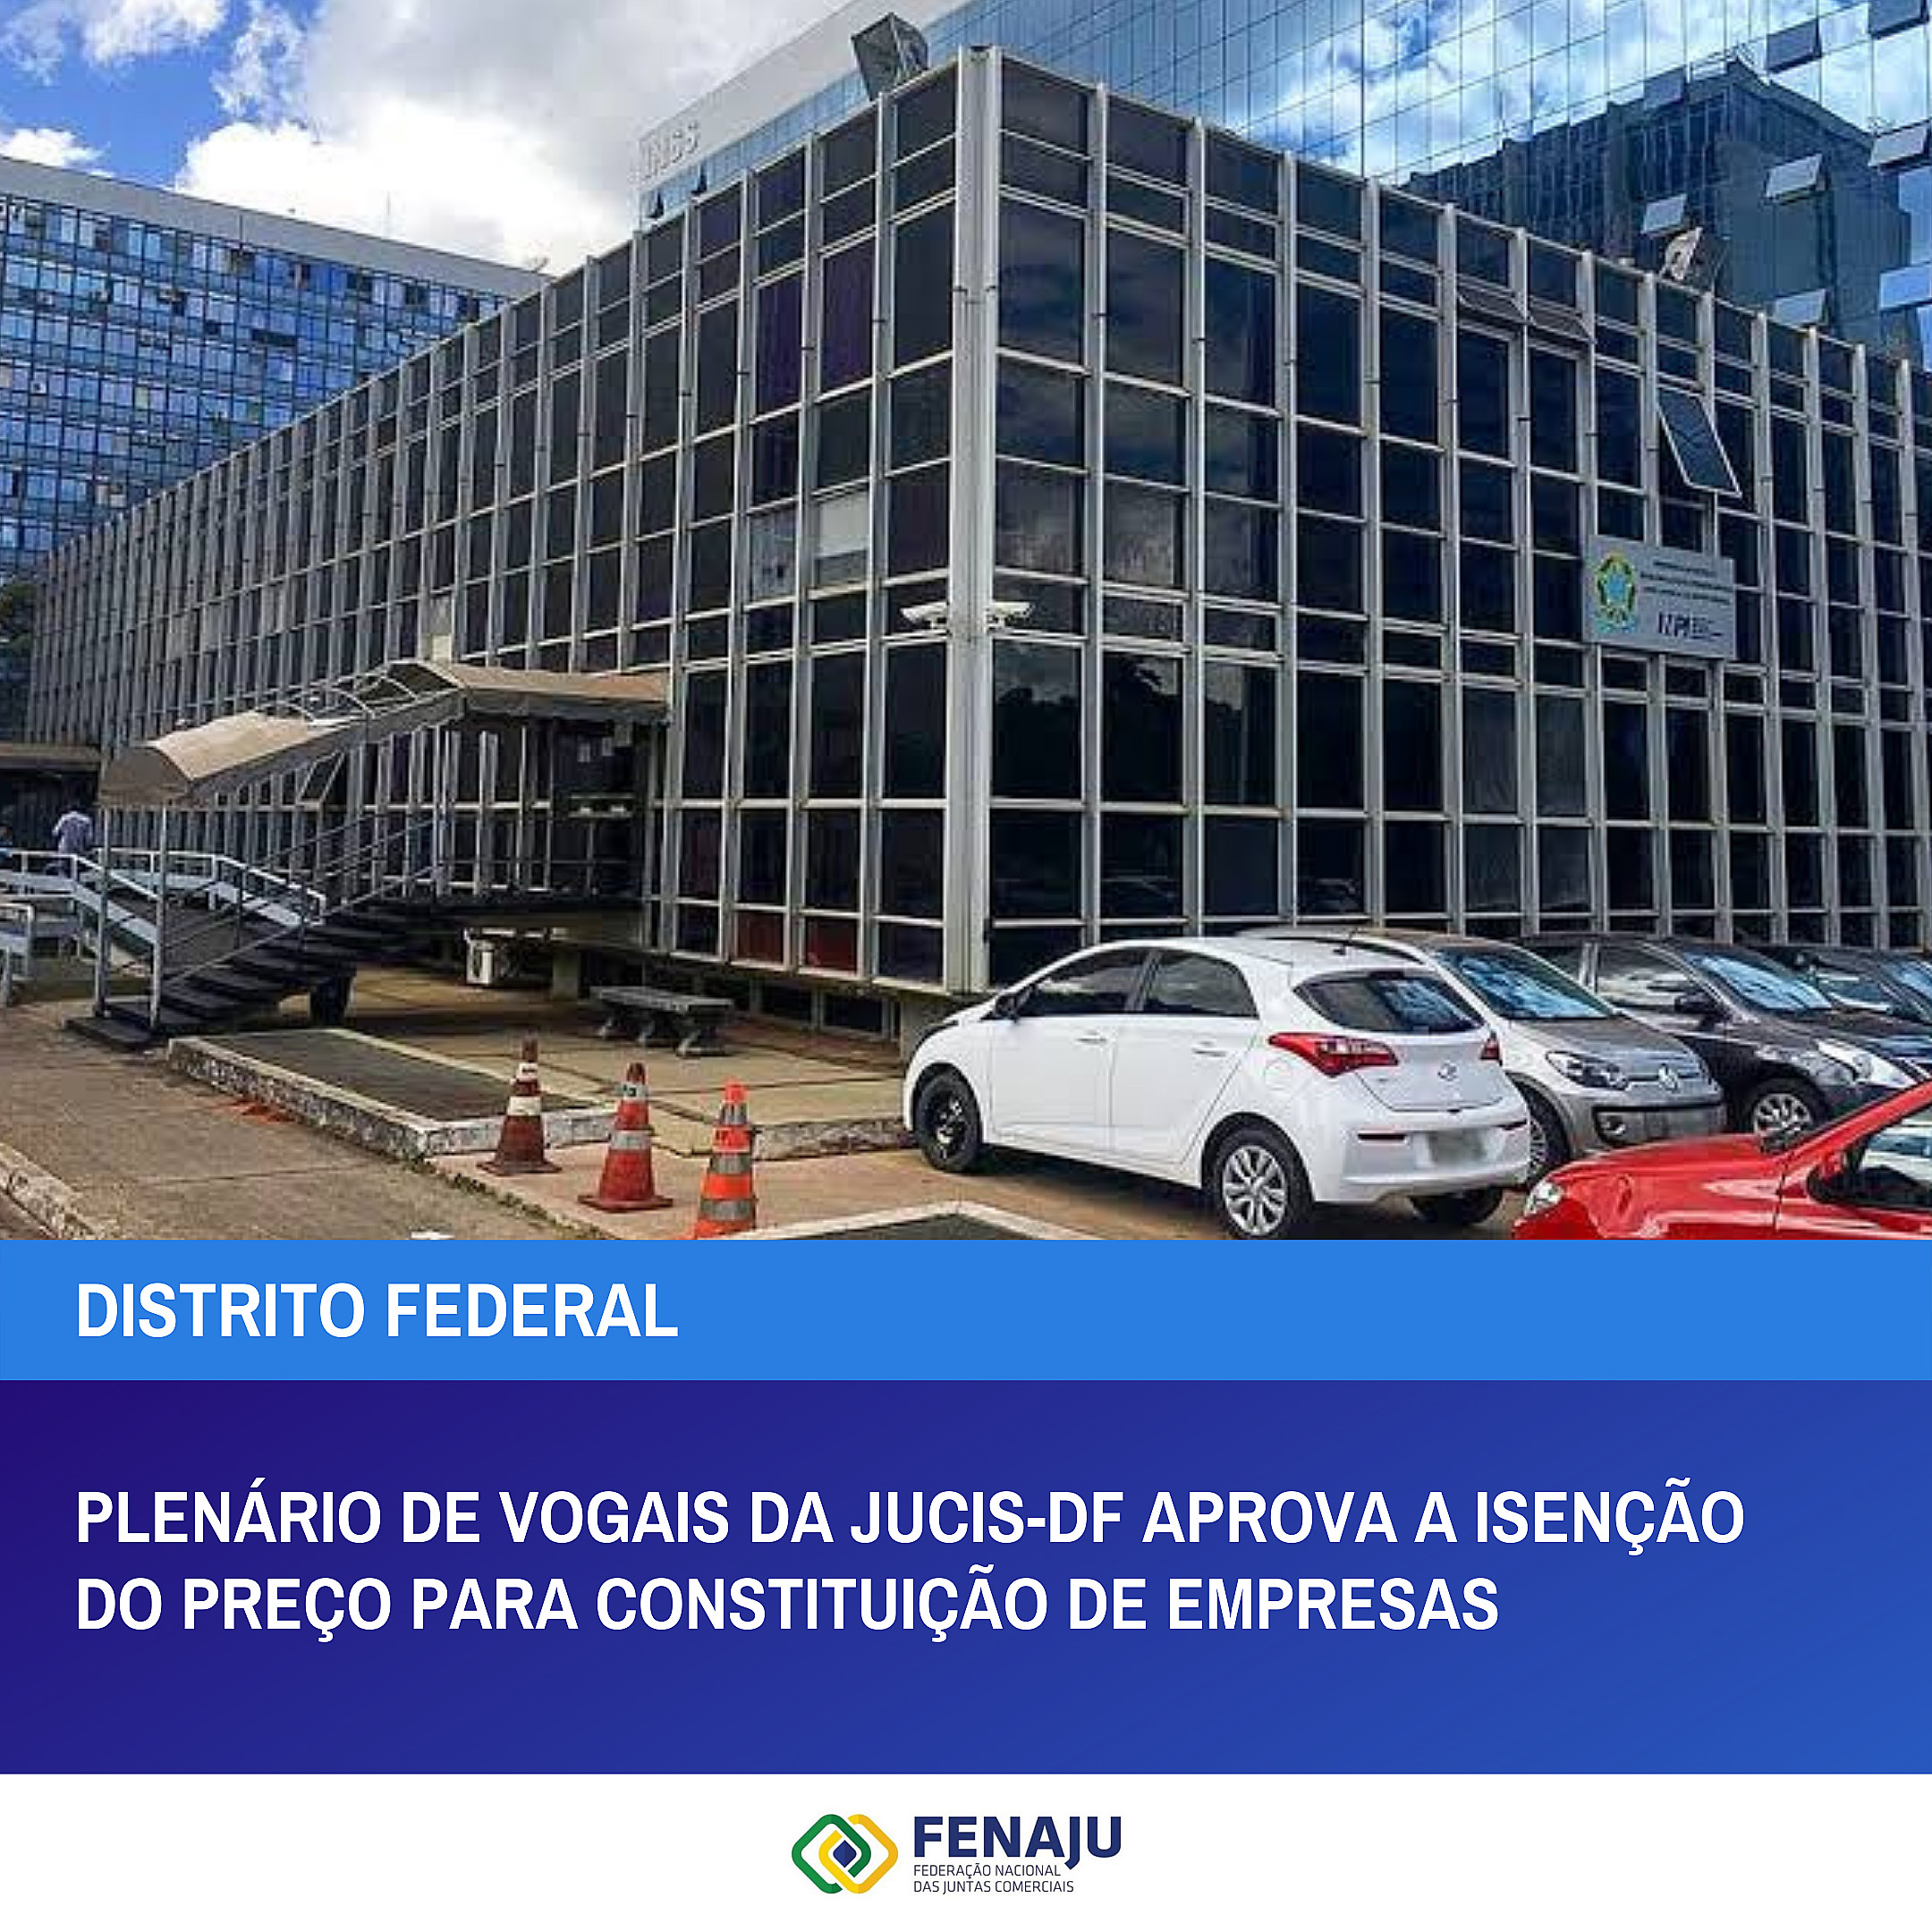 You are currently viewing Plenário de vogais da JUCIS-DF aprova a isenção do preço para constituição de empresas